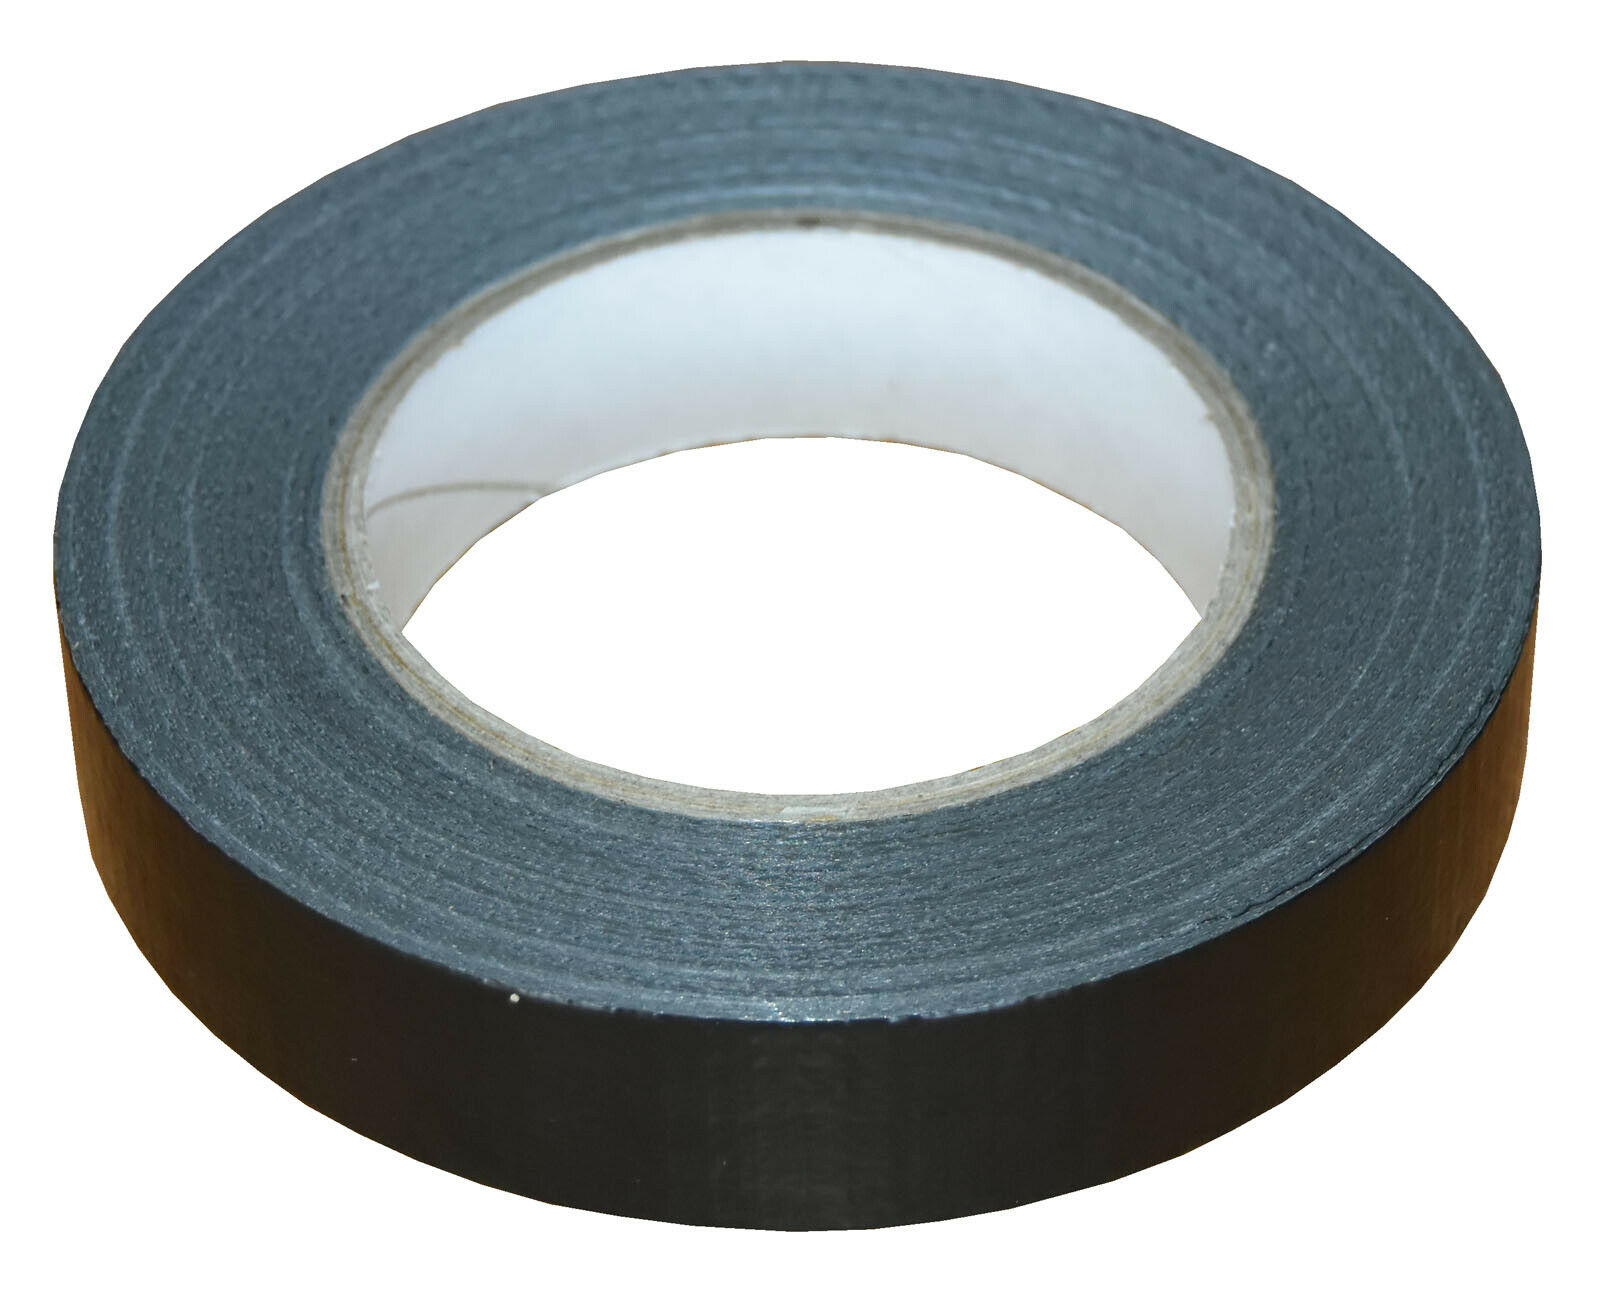 25mm x 50m Black Gaffer Tape Waterproof Duct Tape Qty 48 Rolls